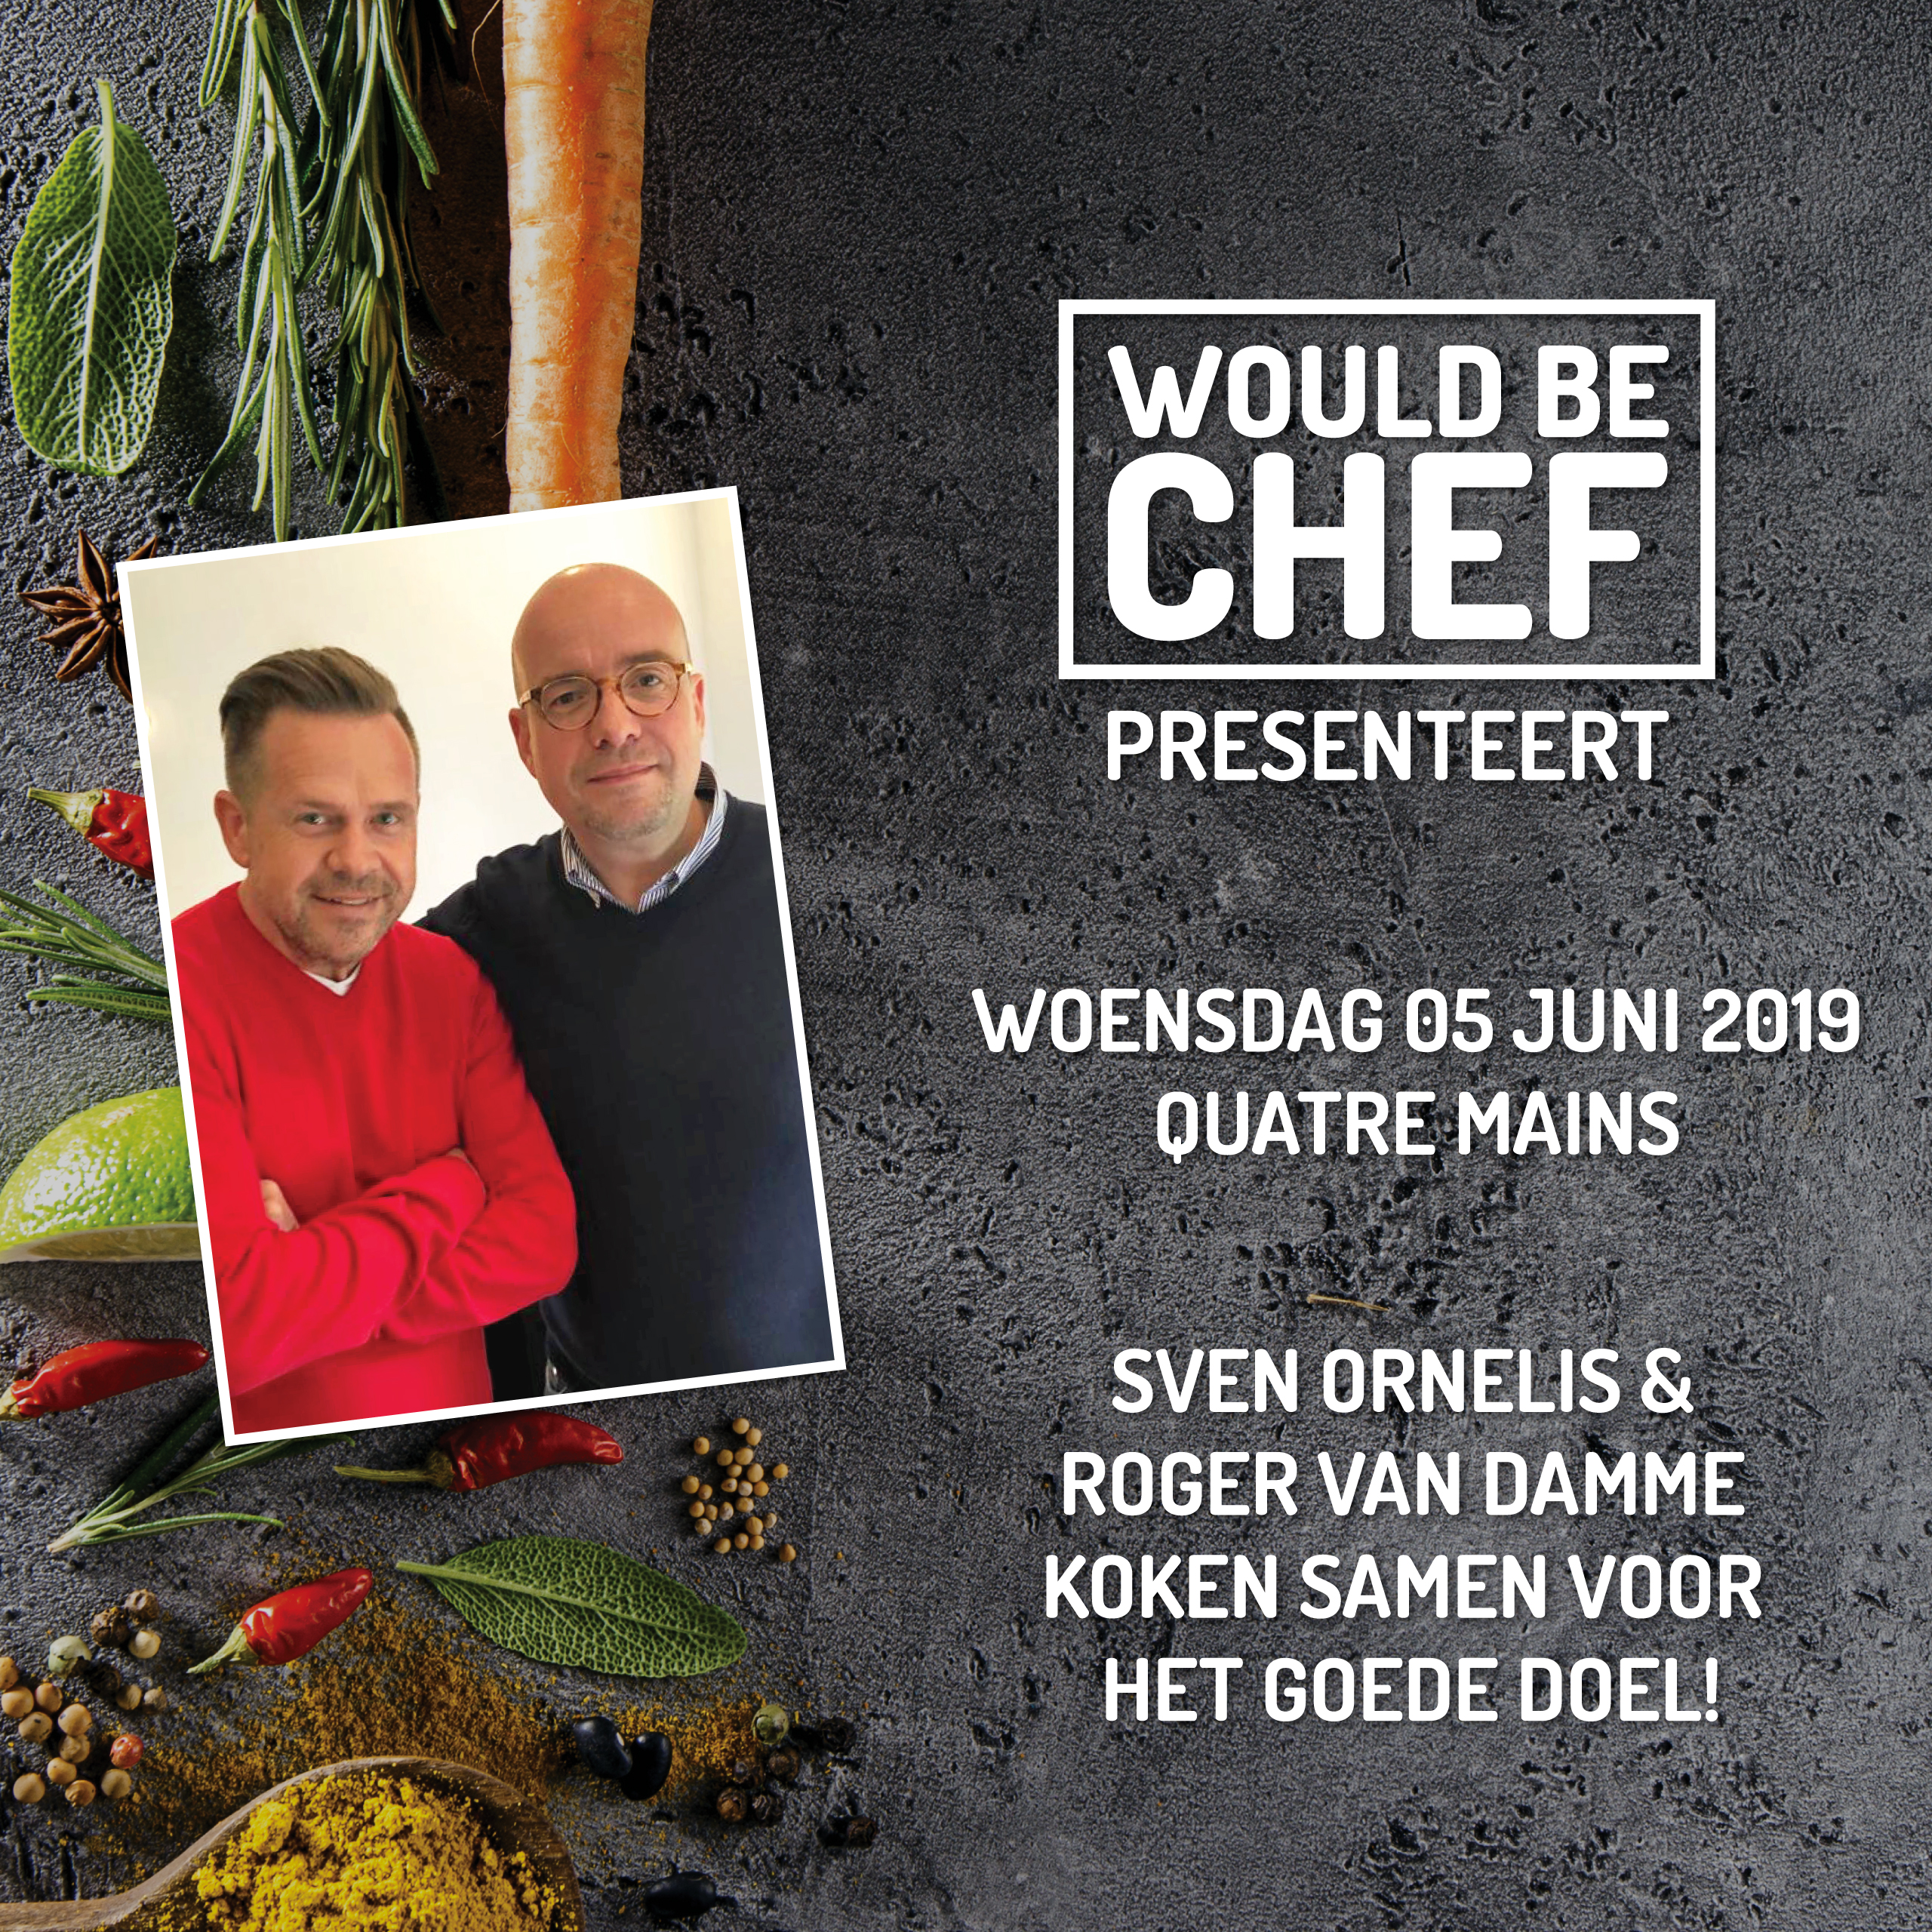 Reserveer vandaag om 10 uur voor "Roger van Damme x Would Be Chef"!